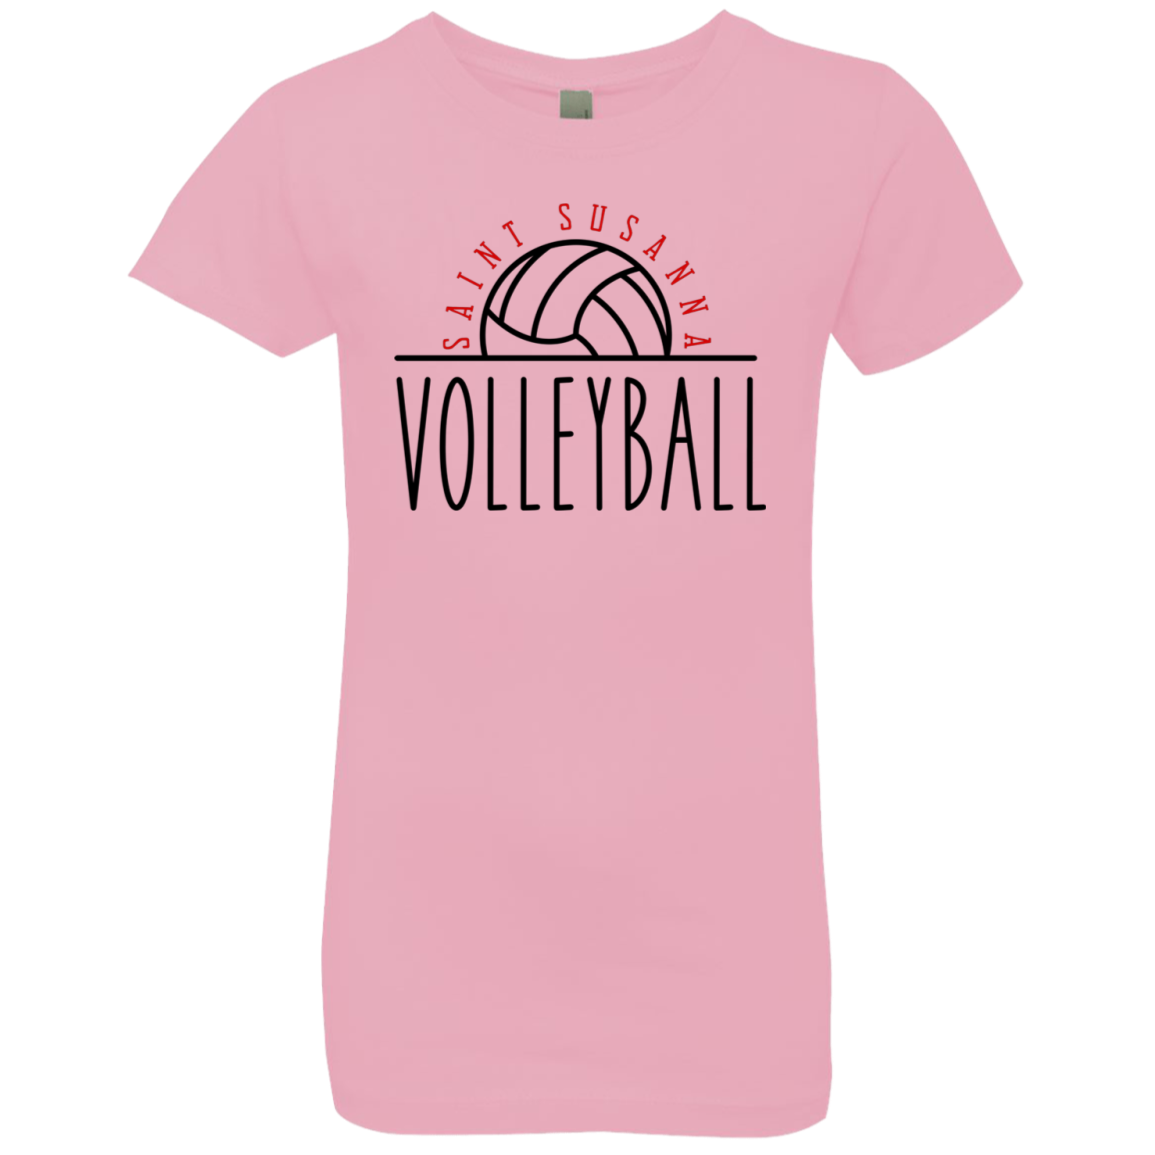 St. Susanna Volleyball Girls' Princess T-Shirt